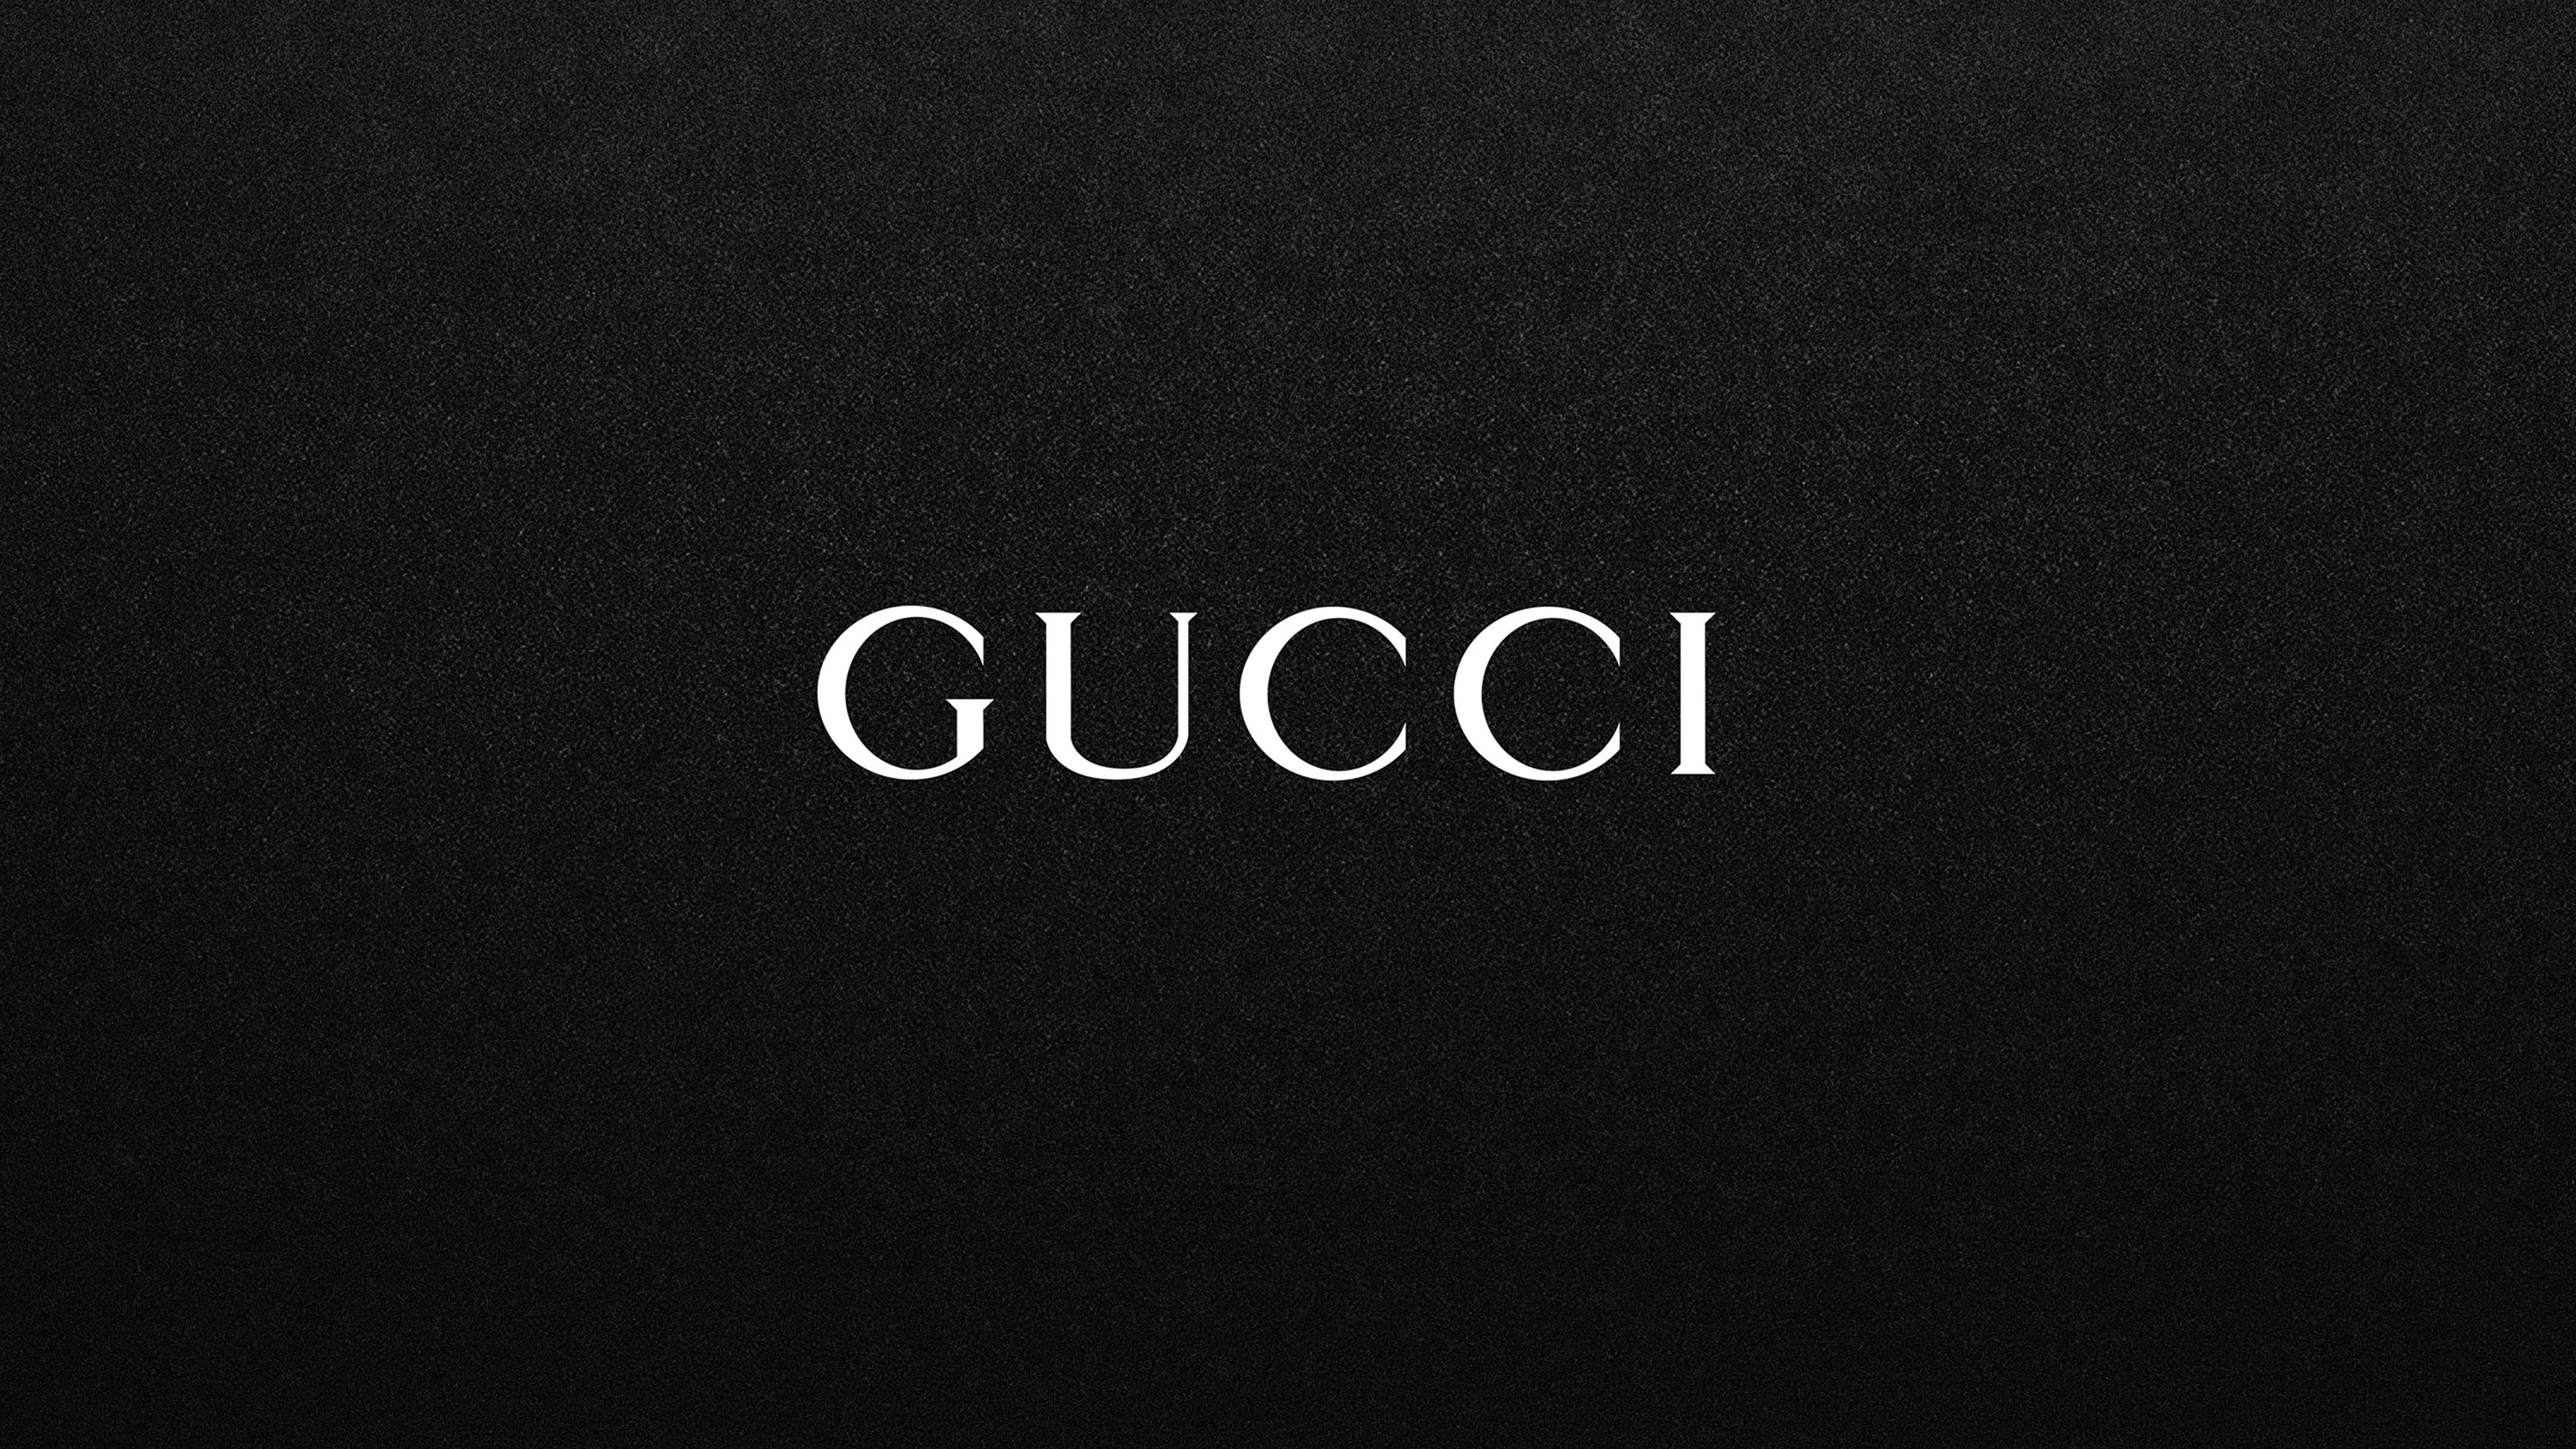 Logotipo, Negro, Gucci, Texto, Marca. Wallpaper in 3840x2160 Resolution